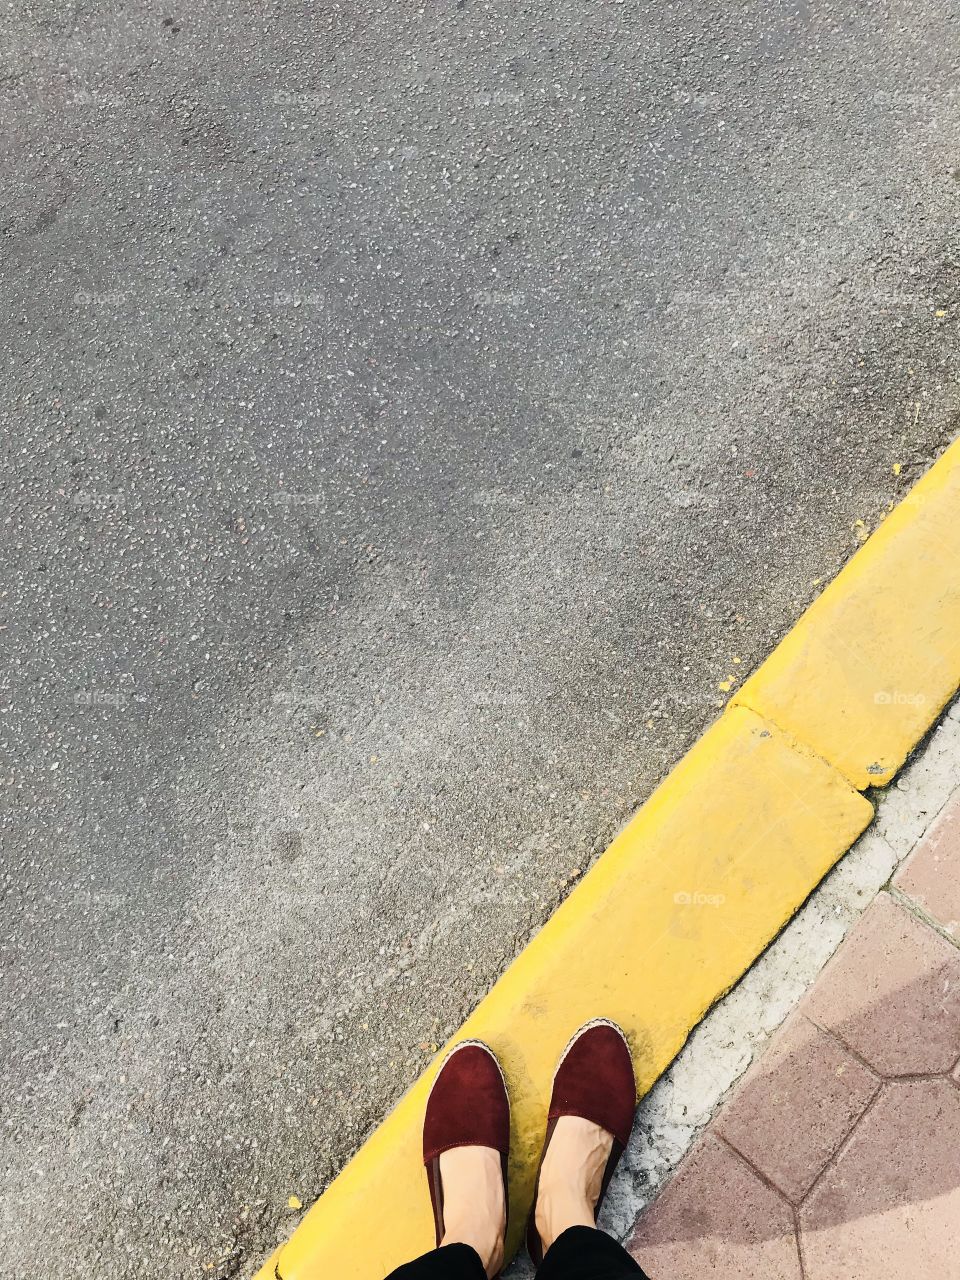 Feet on a sidewalk 